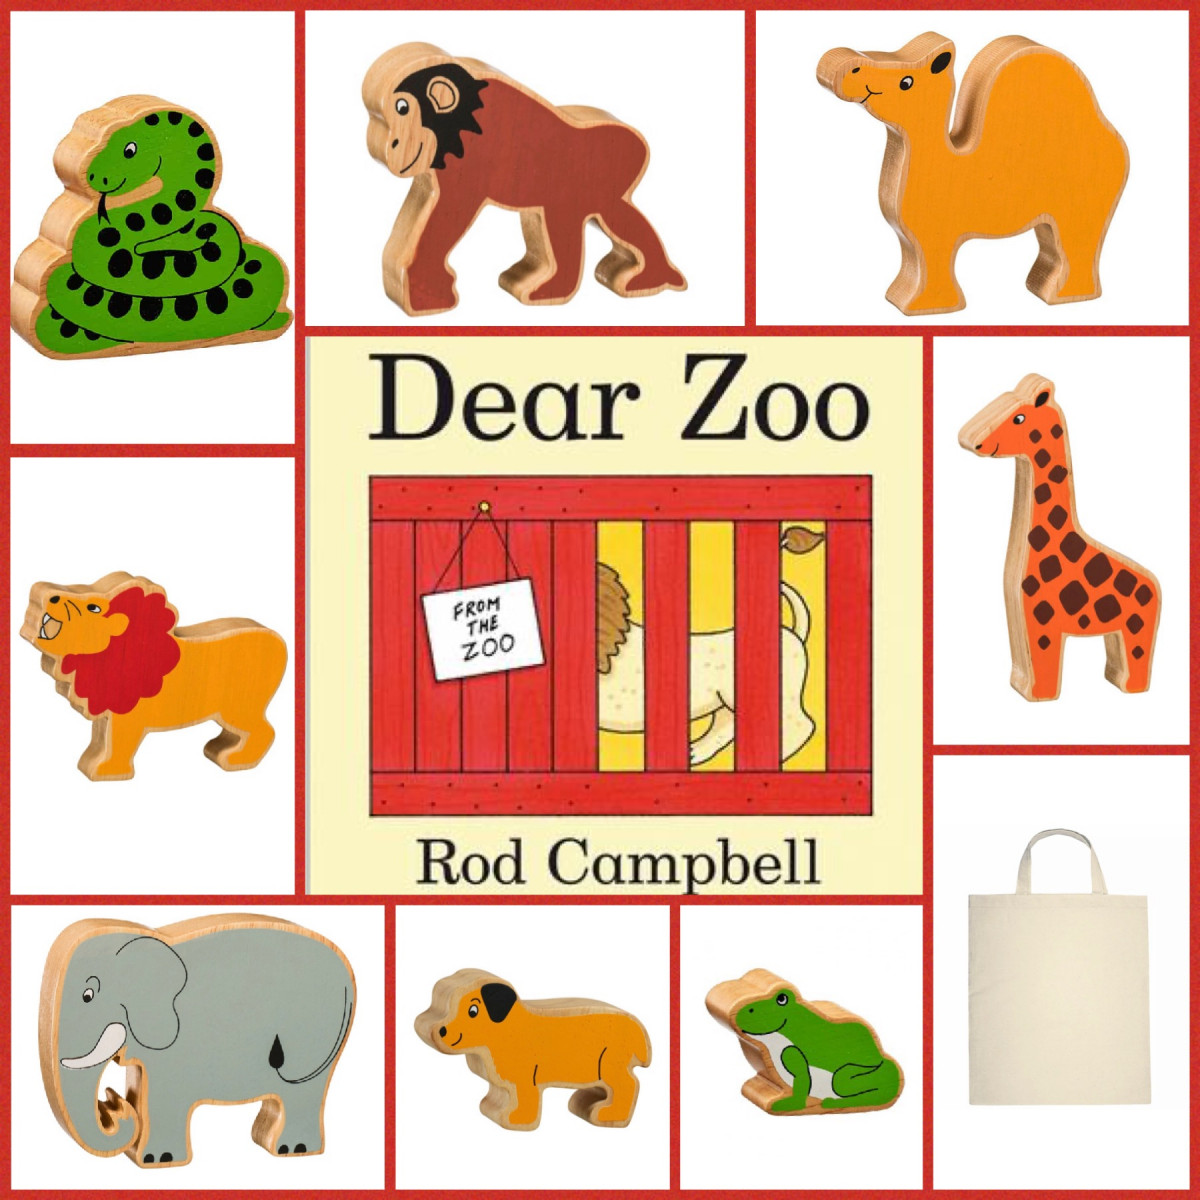 Tinker Tray Play Story Sack: Dear Zoo - Tinker Tray Play